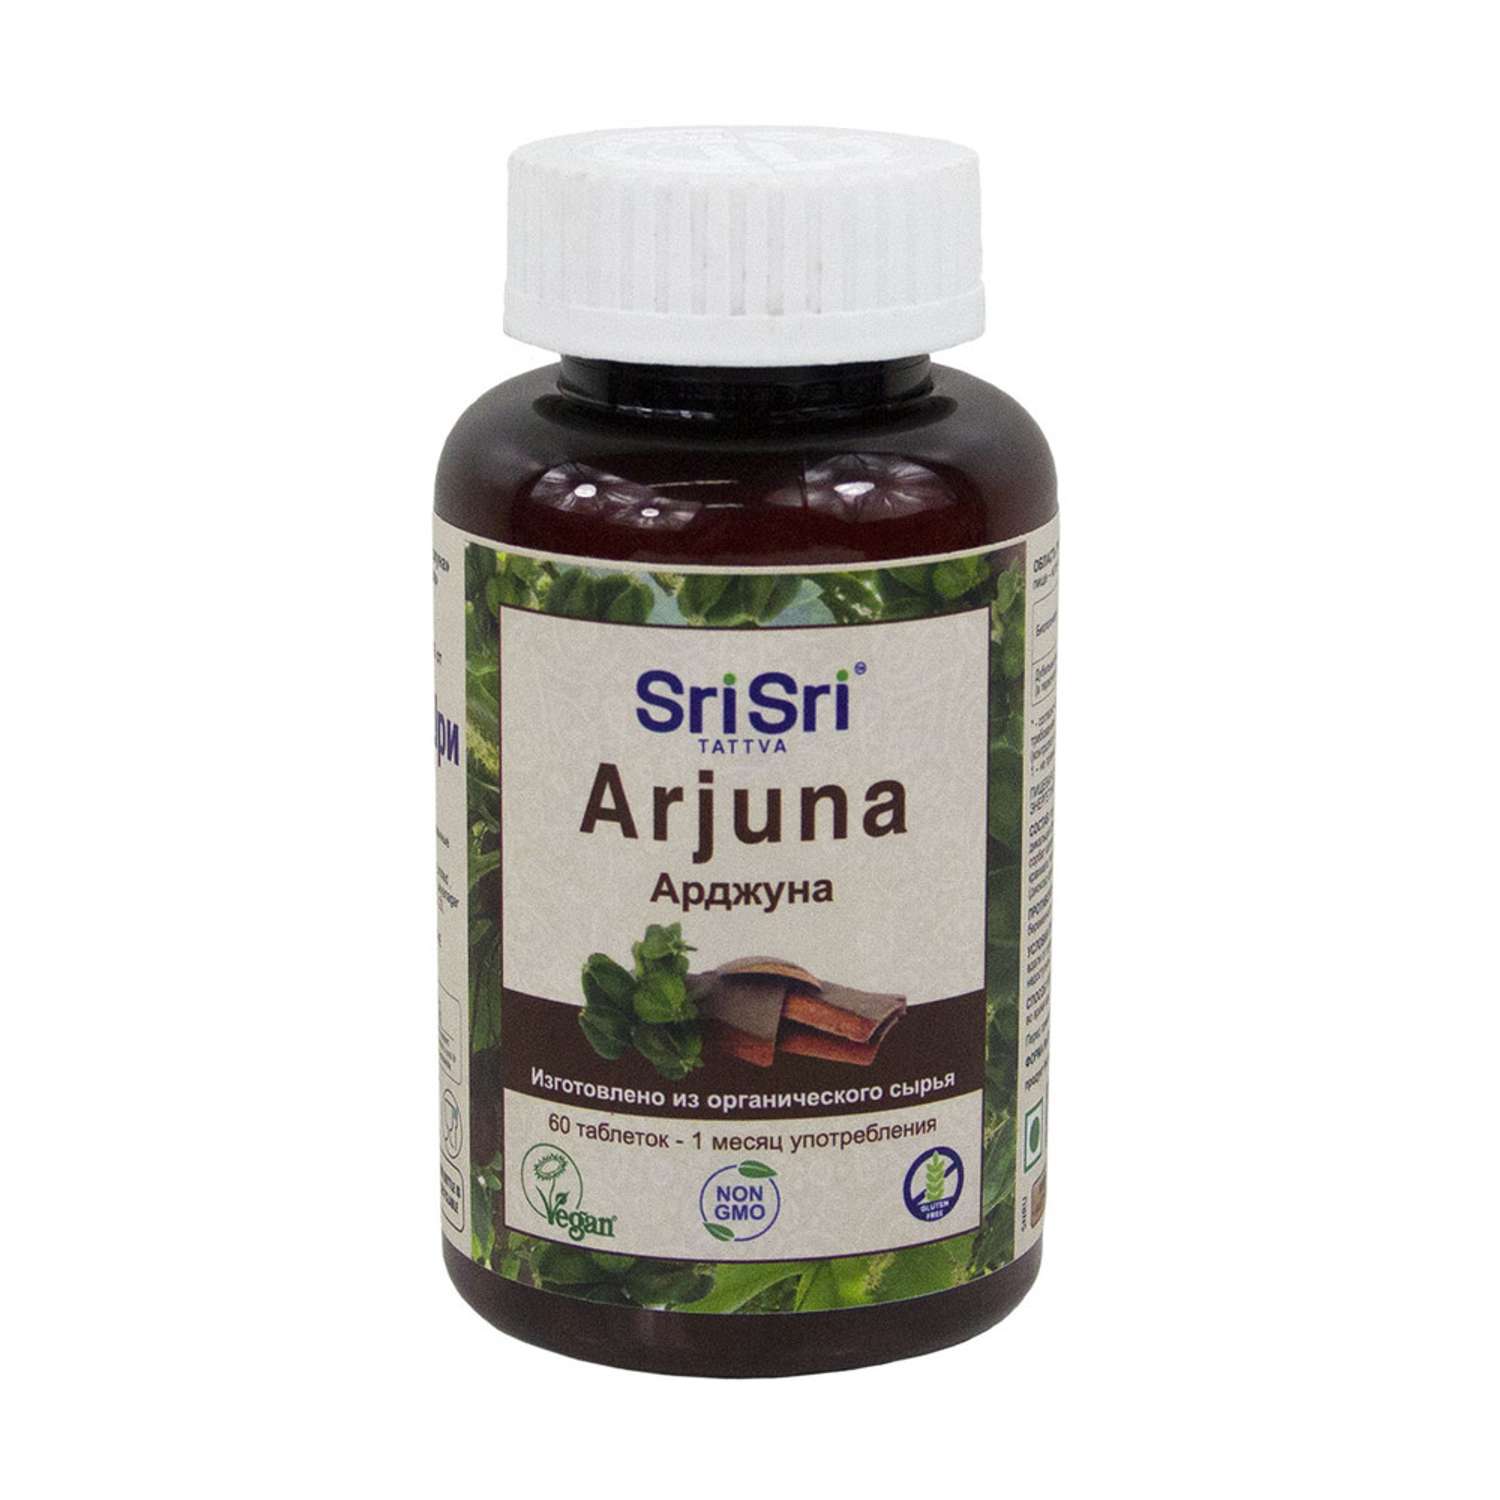 БАД Sri Sri Tattva АРДЖУНА таблетки из органического сырья для сердечно-сосудистой системы 60 шт. по 650 мг. - фото 1